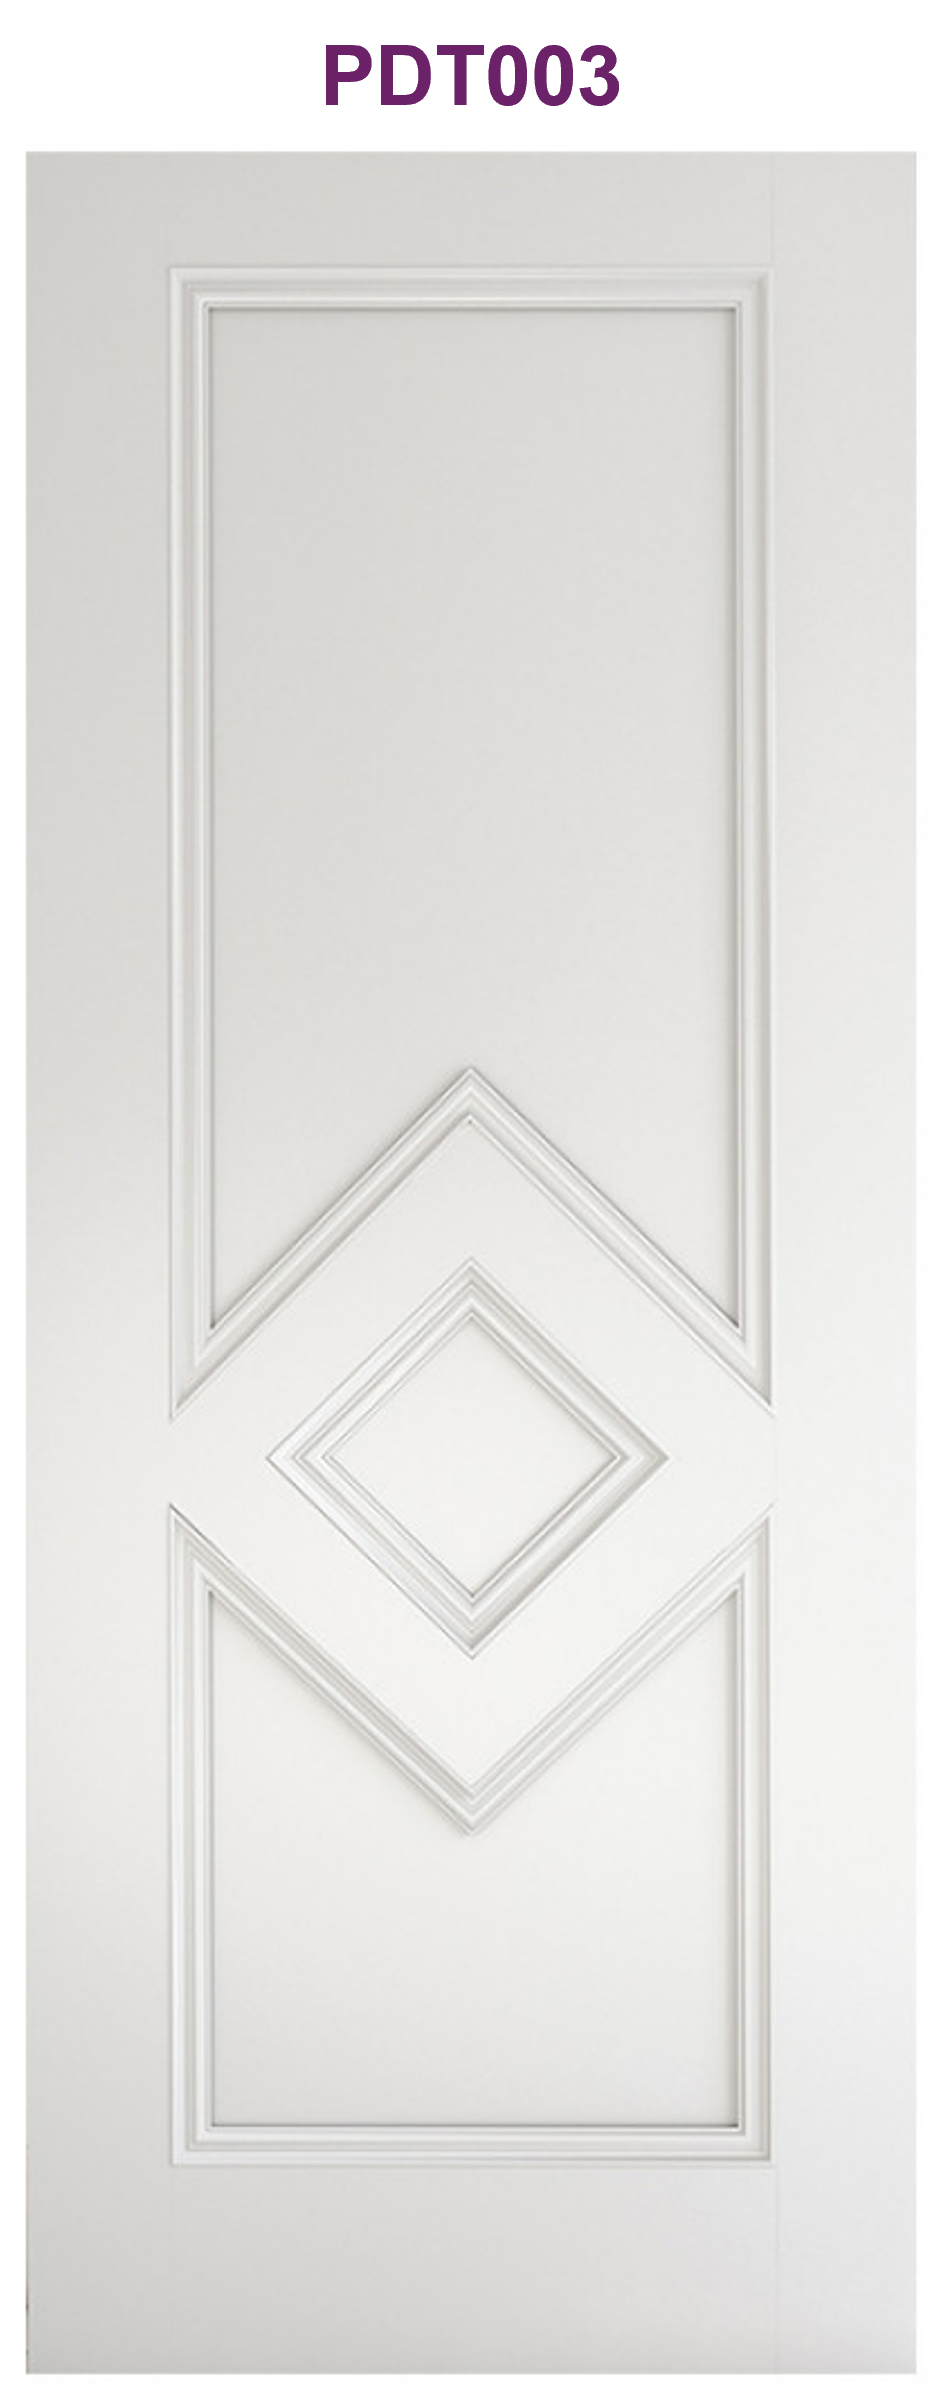 Ascot white primed interior door